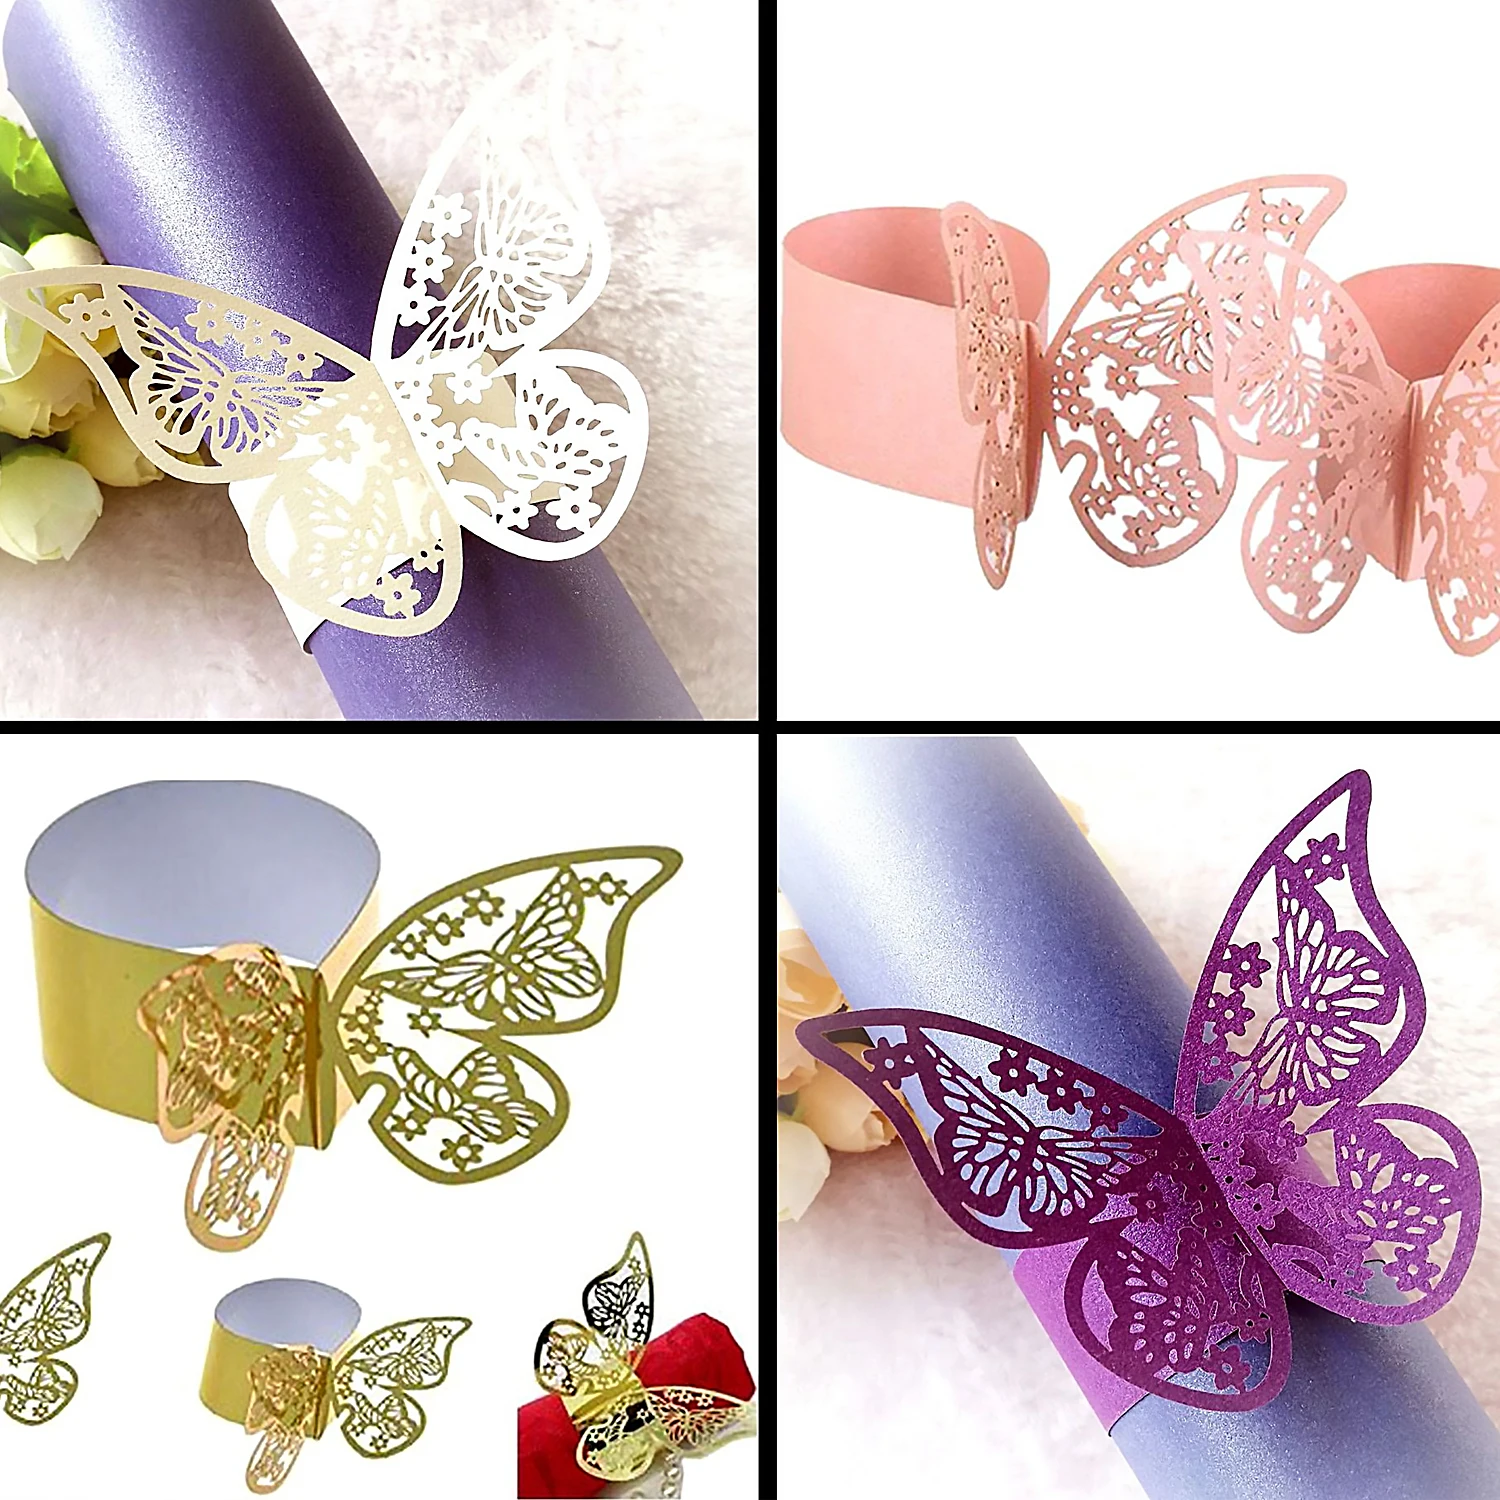 Behogar 50 шт. Элегантные 3D полые бабочки бумажные кольца для салфеток для дома отеля Свадебные украшения для рождественской вечеринки на день